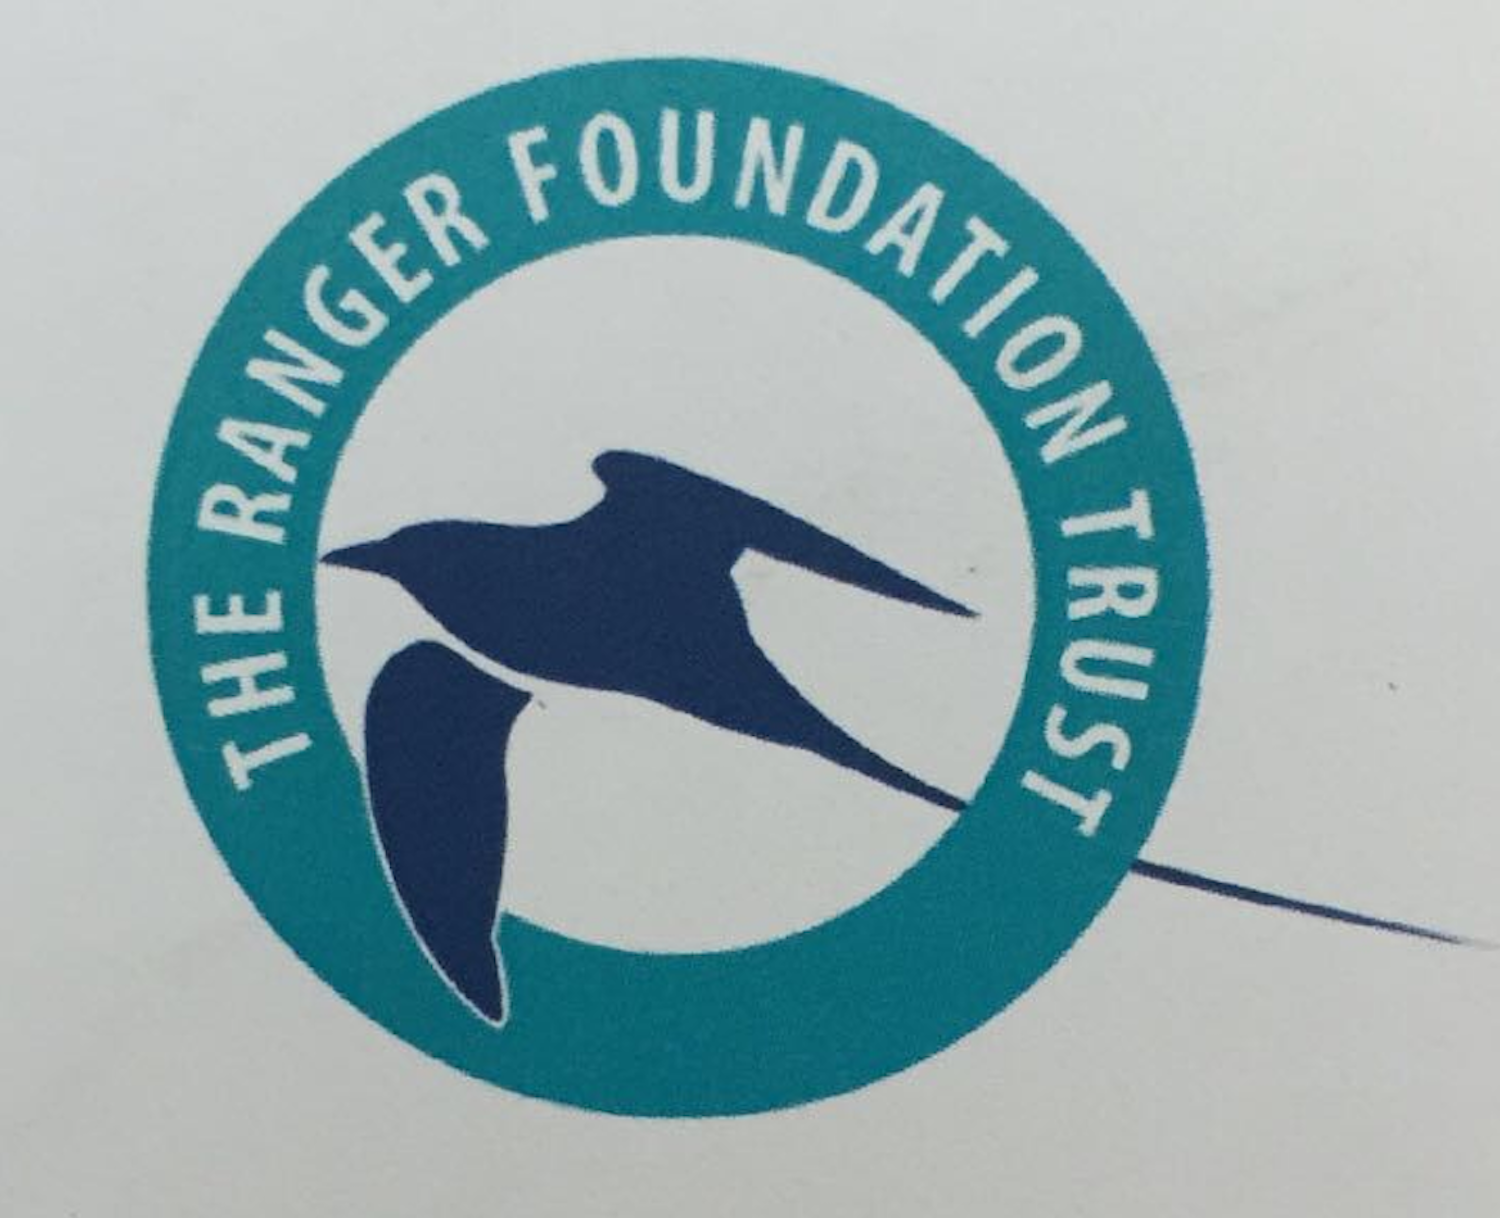 The Ranger Foundation